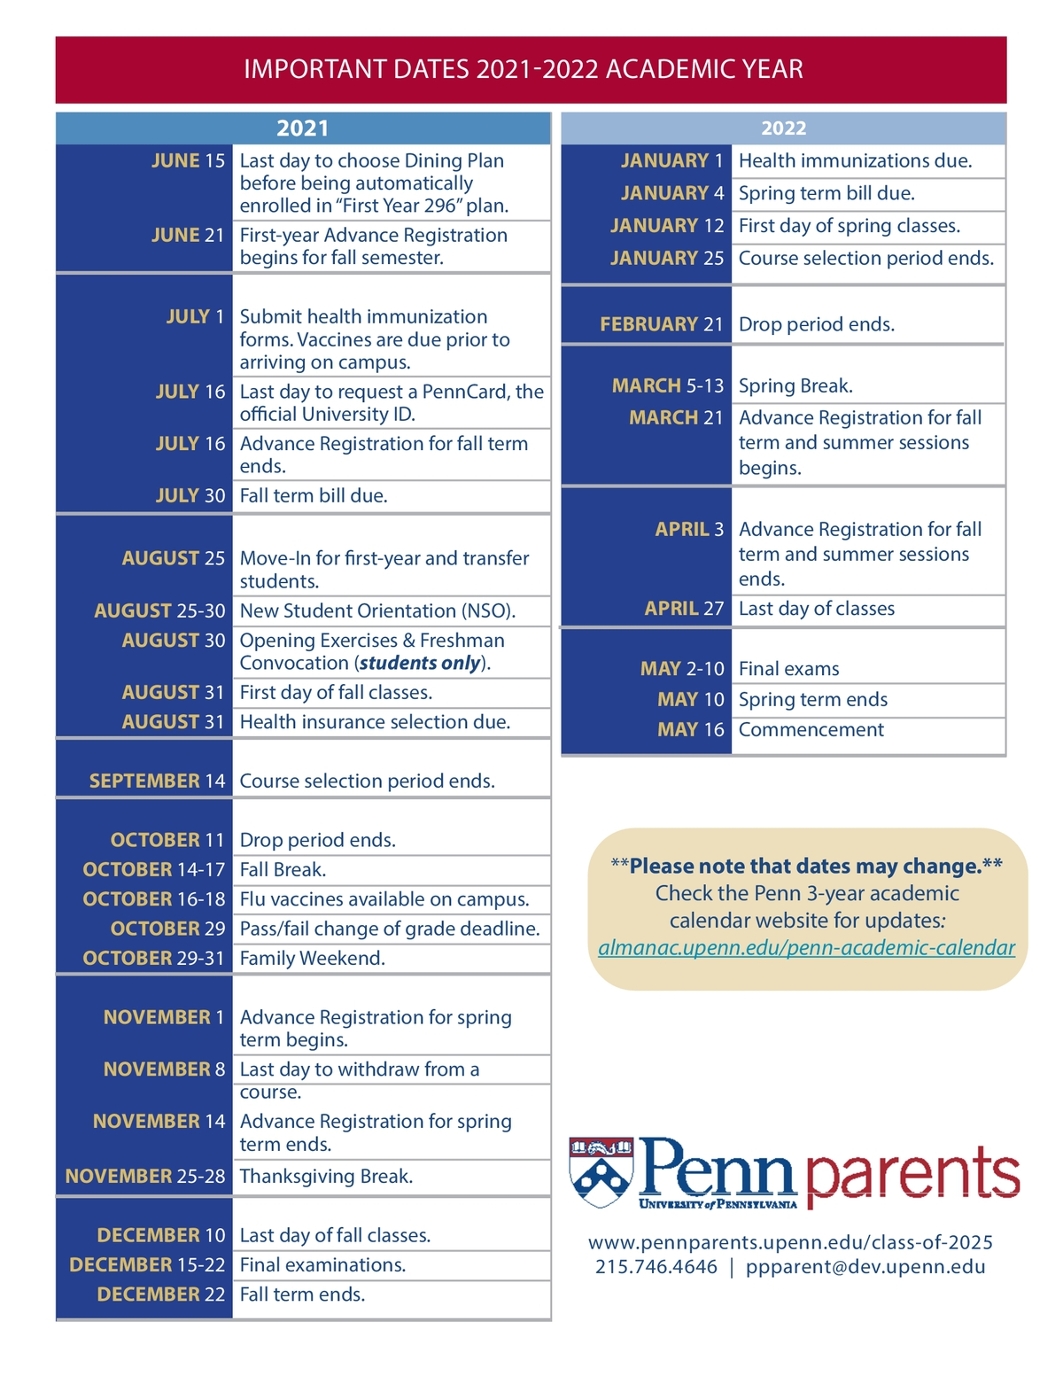 Penn Parents Important Dates 2021-2022